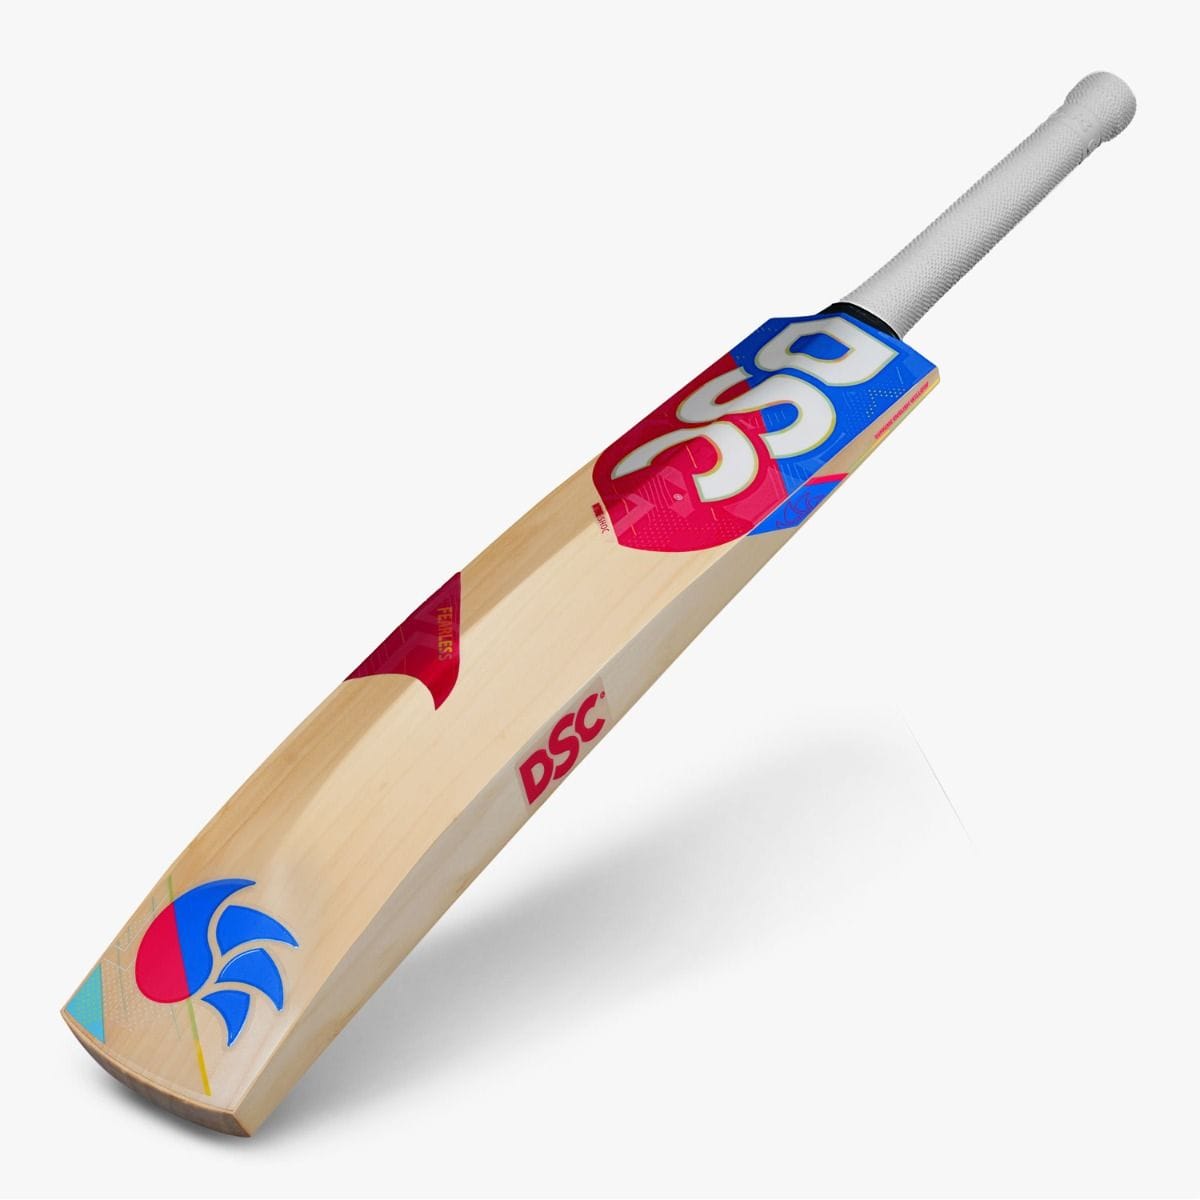 WSC Cricket Bats Harrow DSC Intense Shoc Junior Cricket Bat